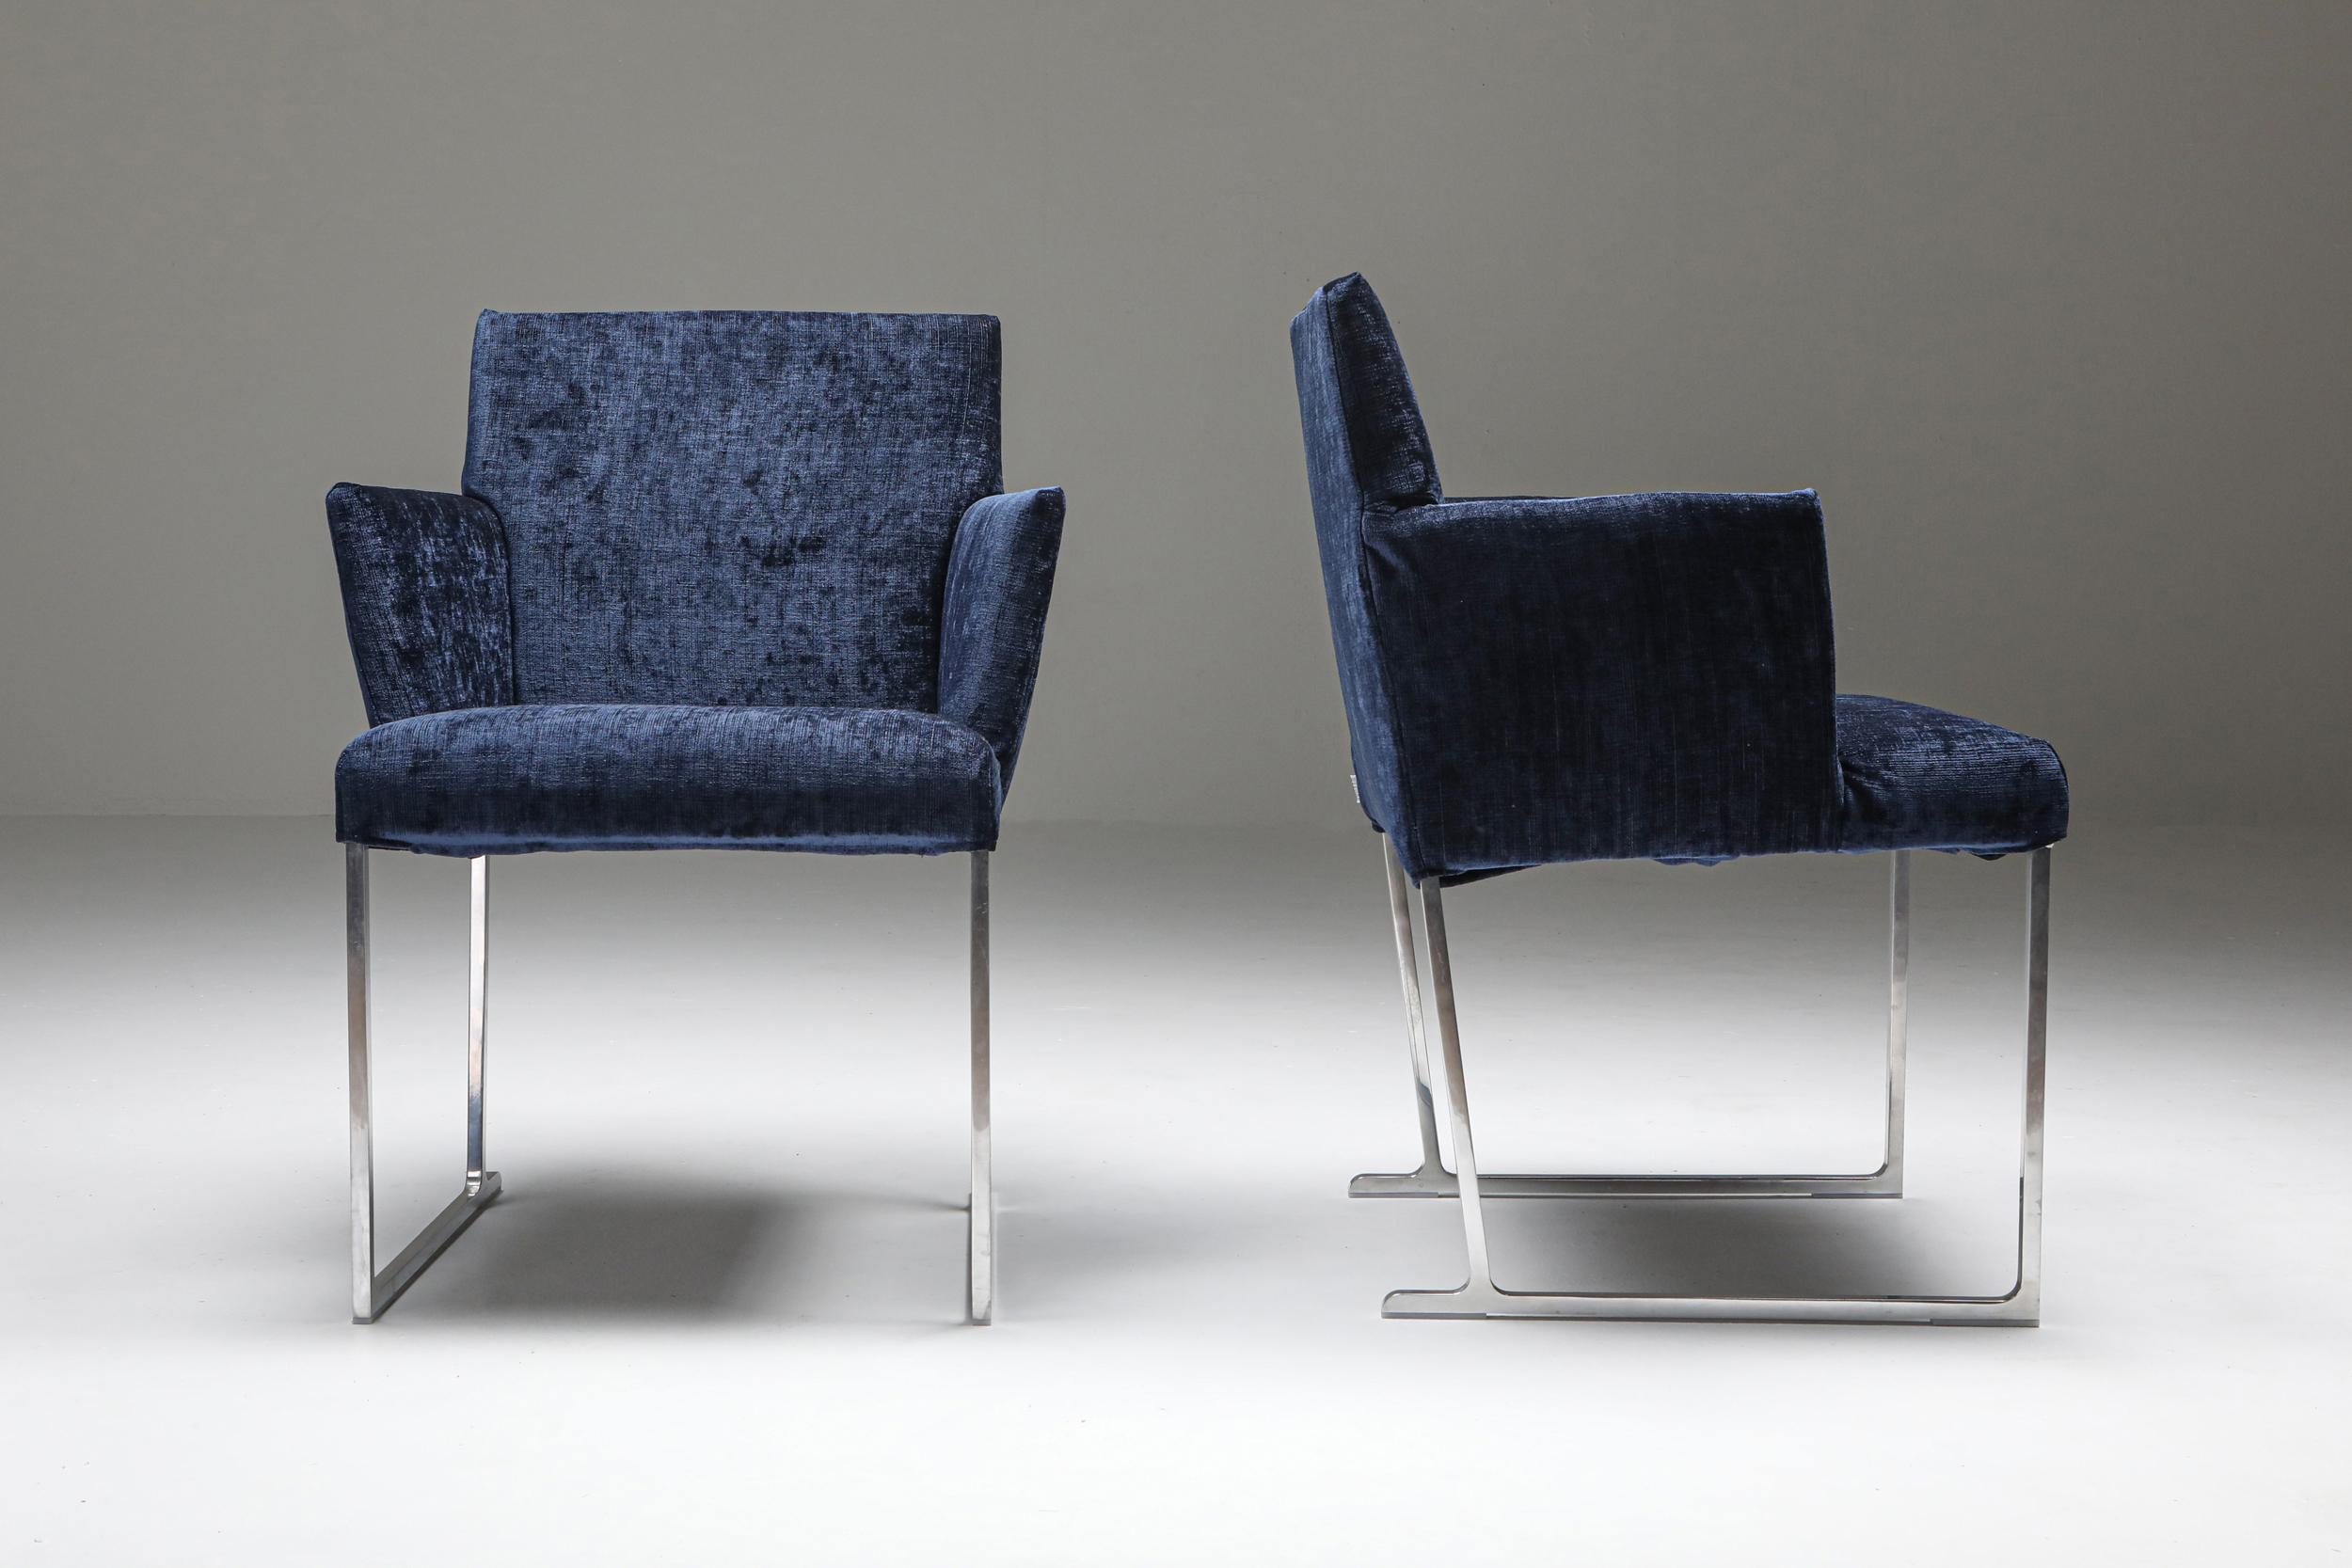 Solo Chairs by Antonio Citterio for Maxalto 1